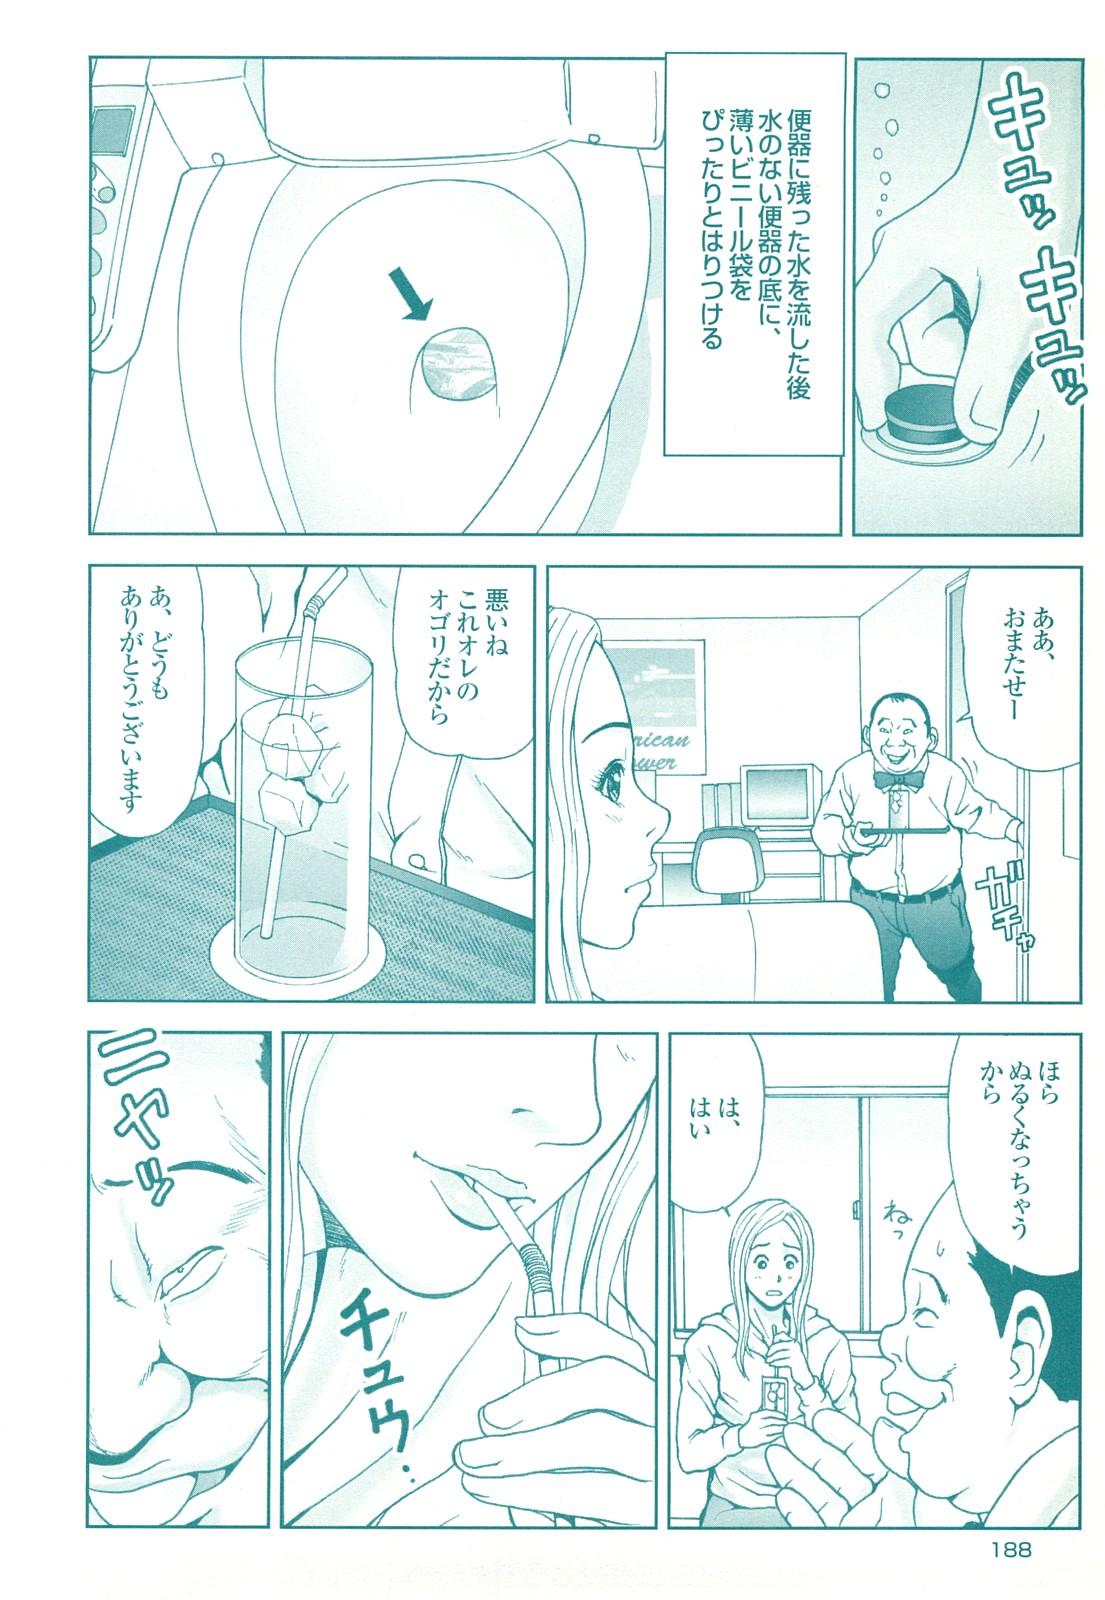 コミック裏モノJAPAN Vol.18 今井のりたつスペシャル号 187